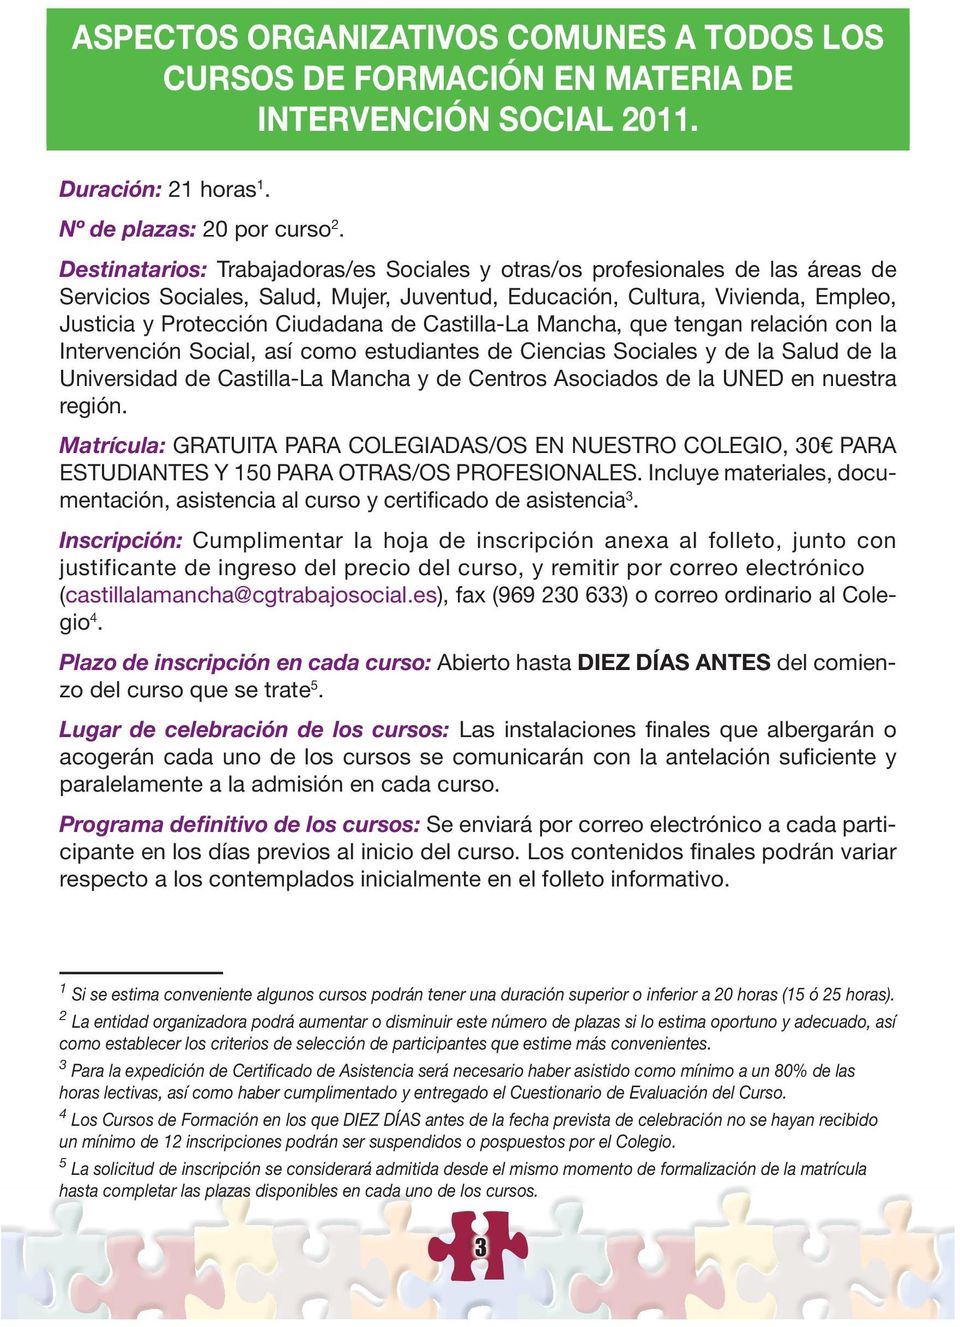 Castilla-La Mancha, que tengan relación con la Intervención Social, así como estudiantes de Ciencias Sociales y de la Salud de la Universidad de Castilla-La Mancha y de Centros Asociados de la UNED